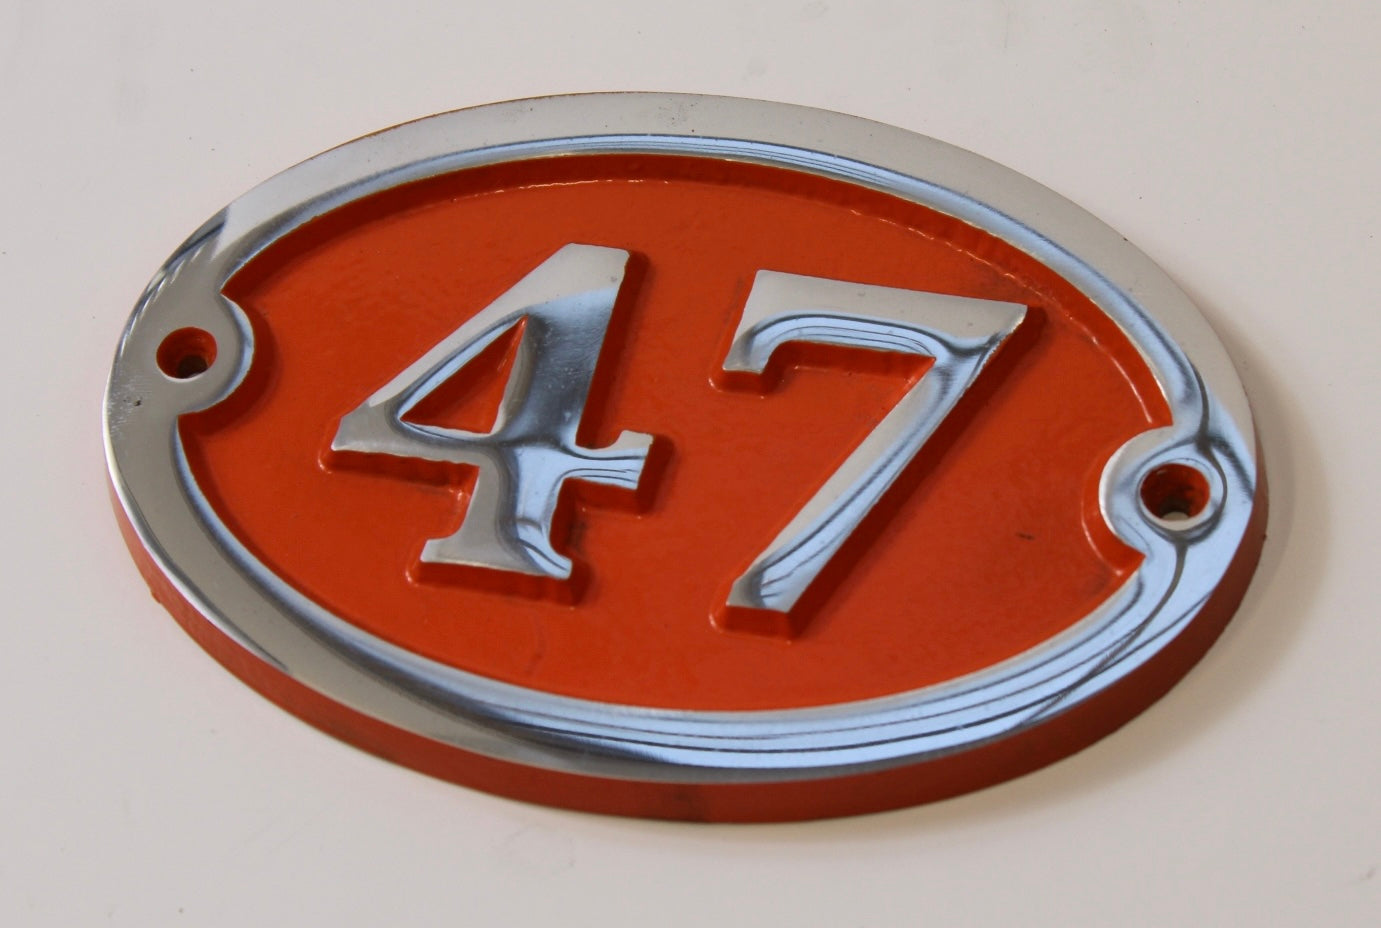 house number sign aluminium with orange background